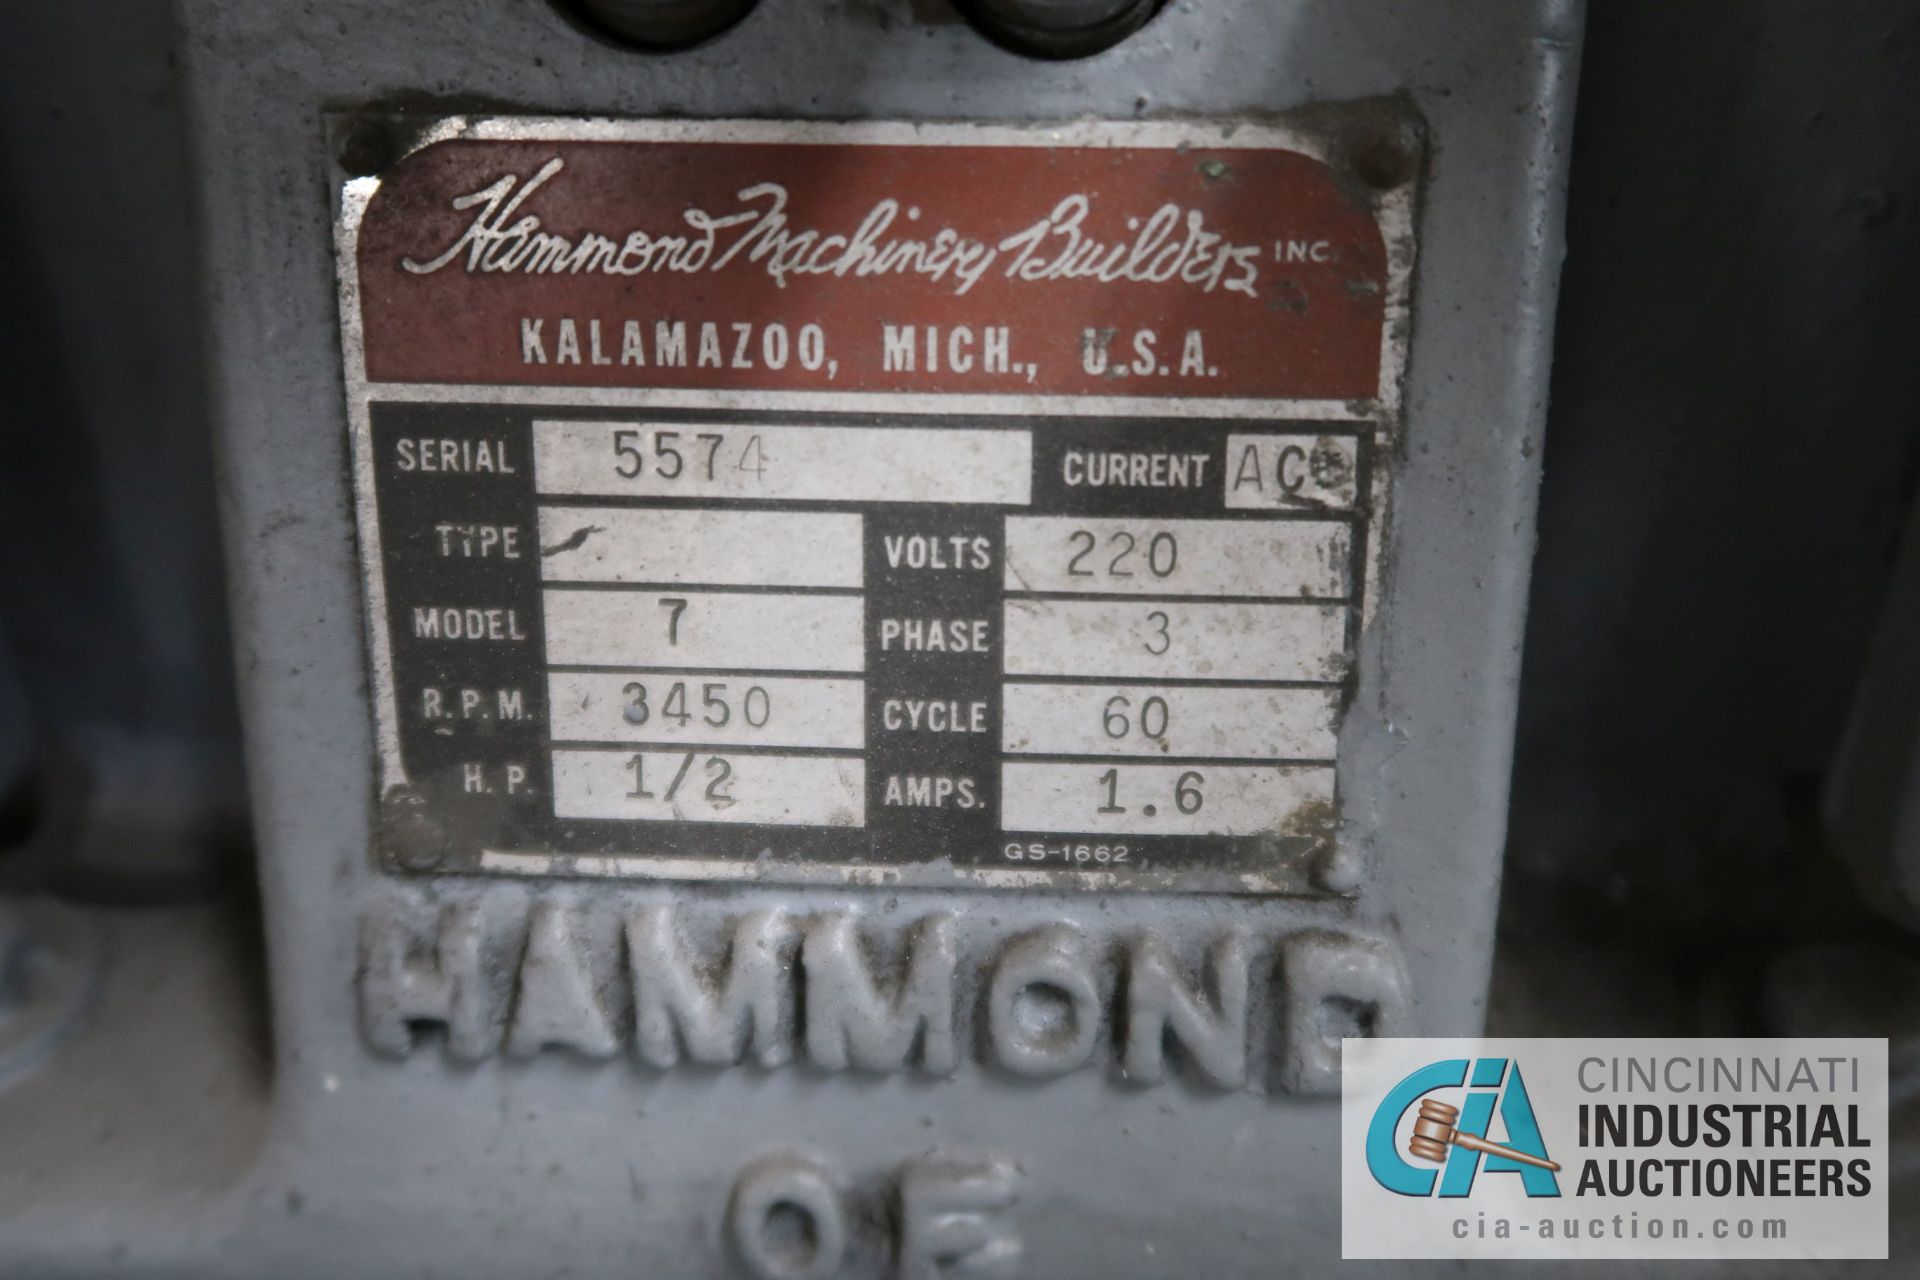 HAMMOND CARBIDE GRINDER; S/N 5574, 1/2 HP - Image 6 of 6